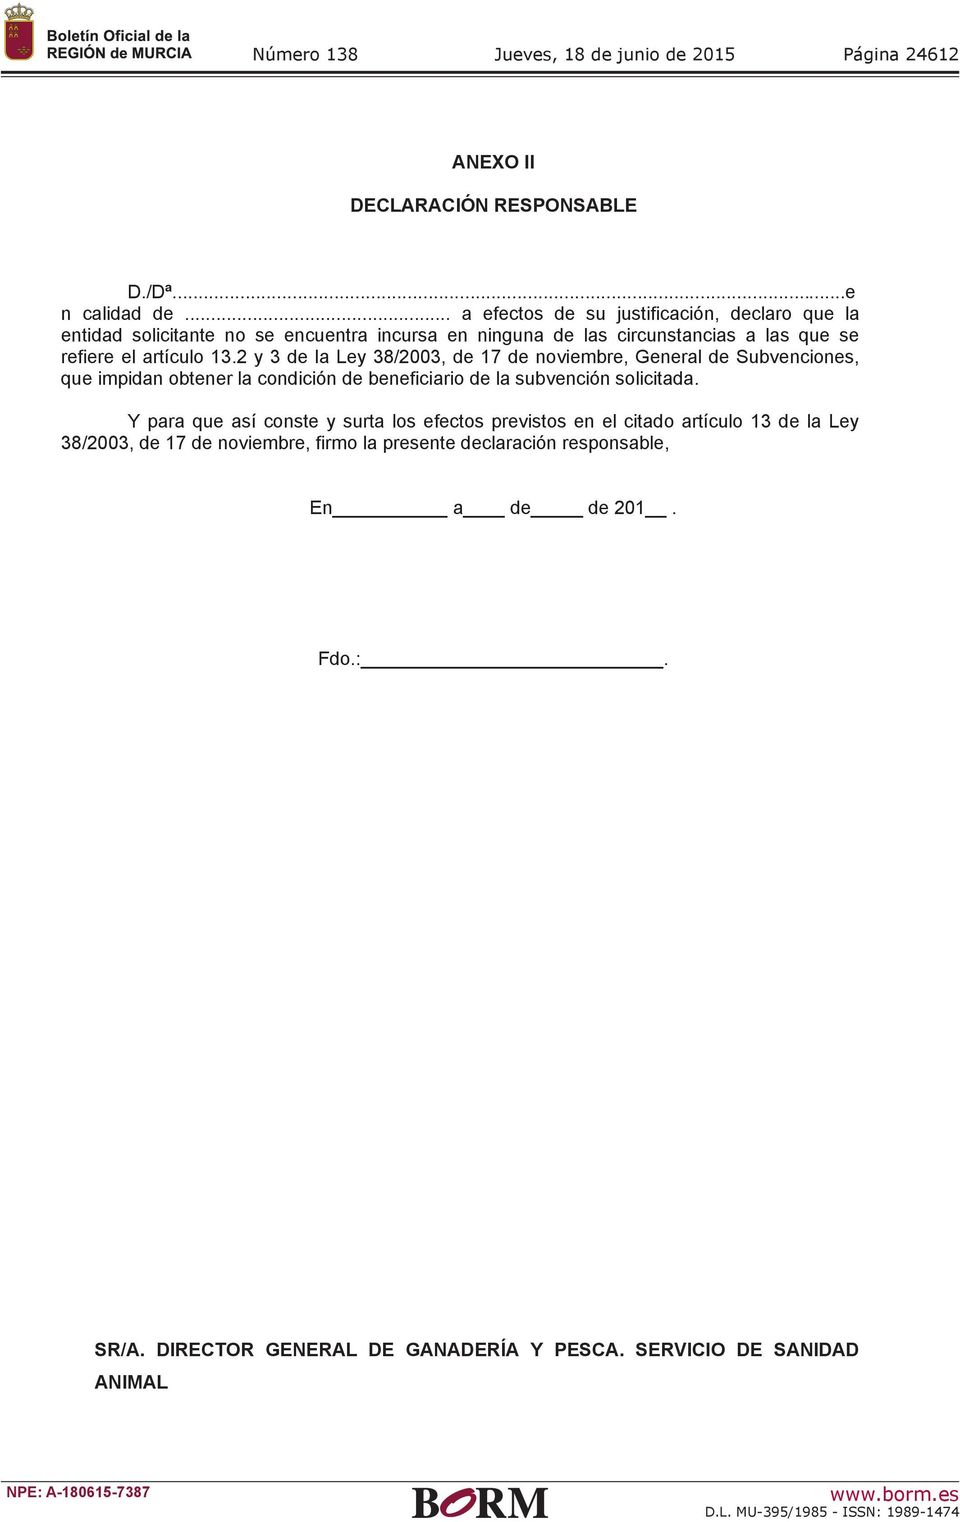 2 y 3 de la Ley 38/2003, de 17 de noviembre, General de Subvenciones, que impidan obtener la condición de beneficiario de la subvención solicitada.